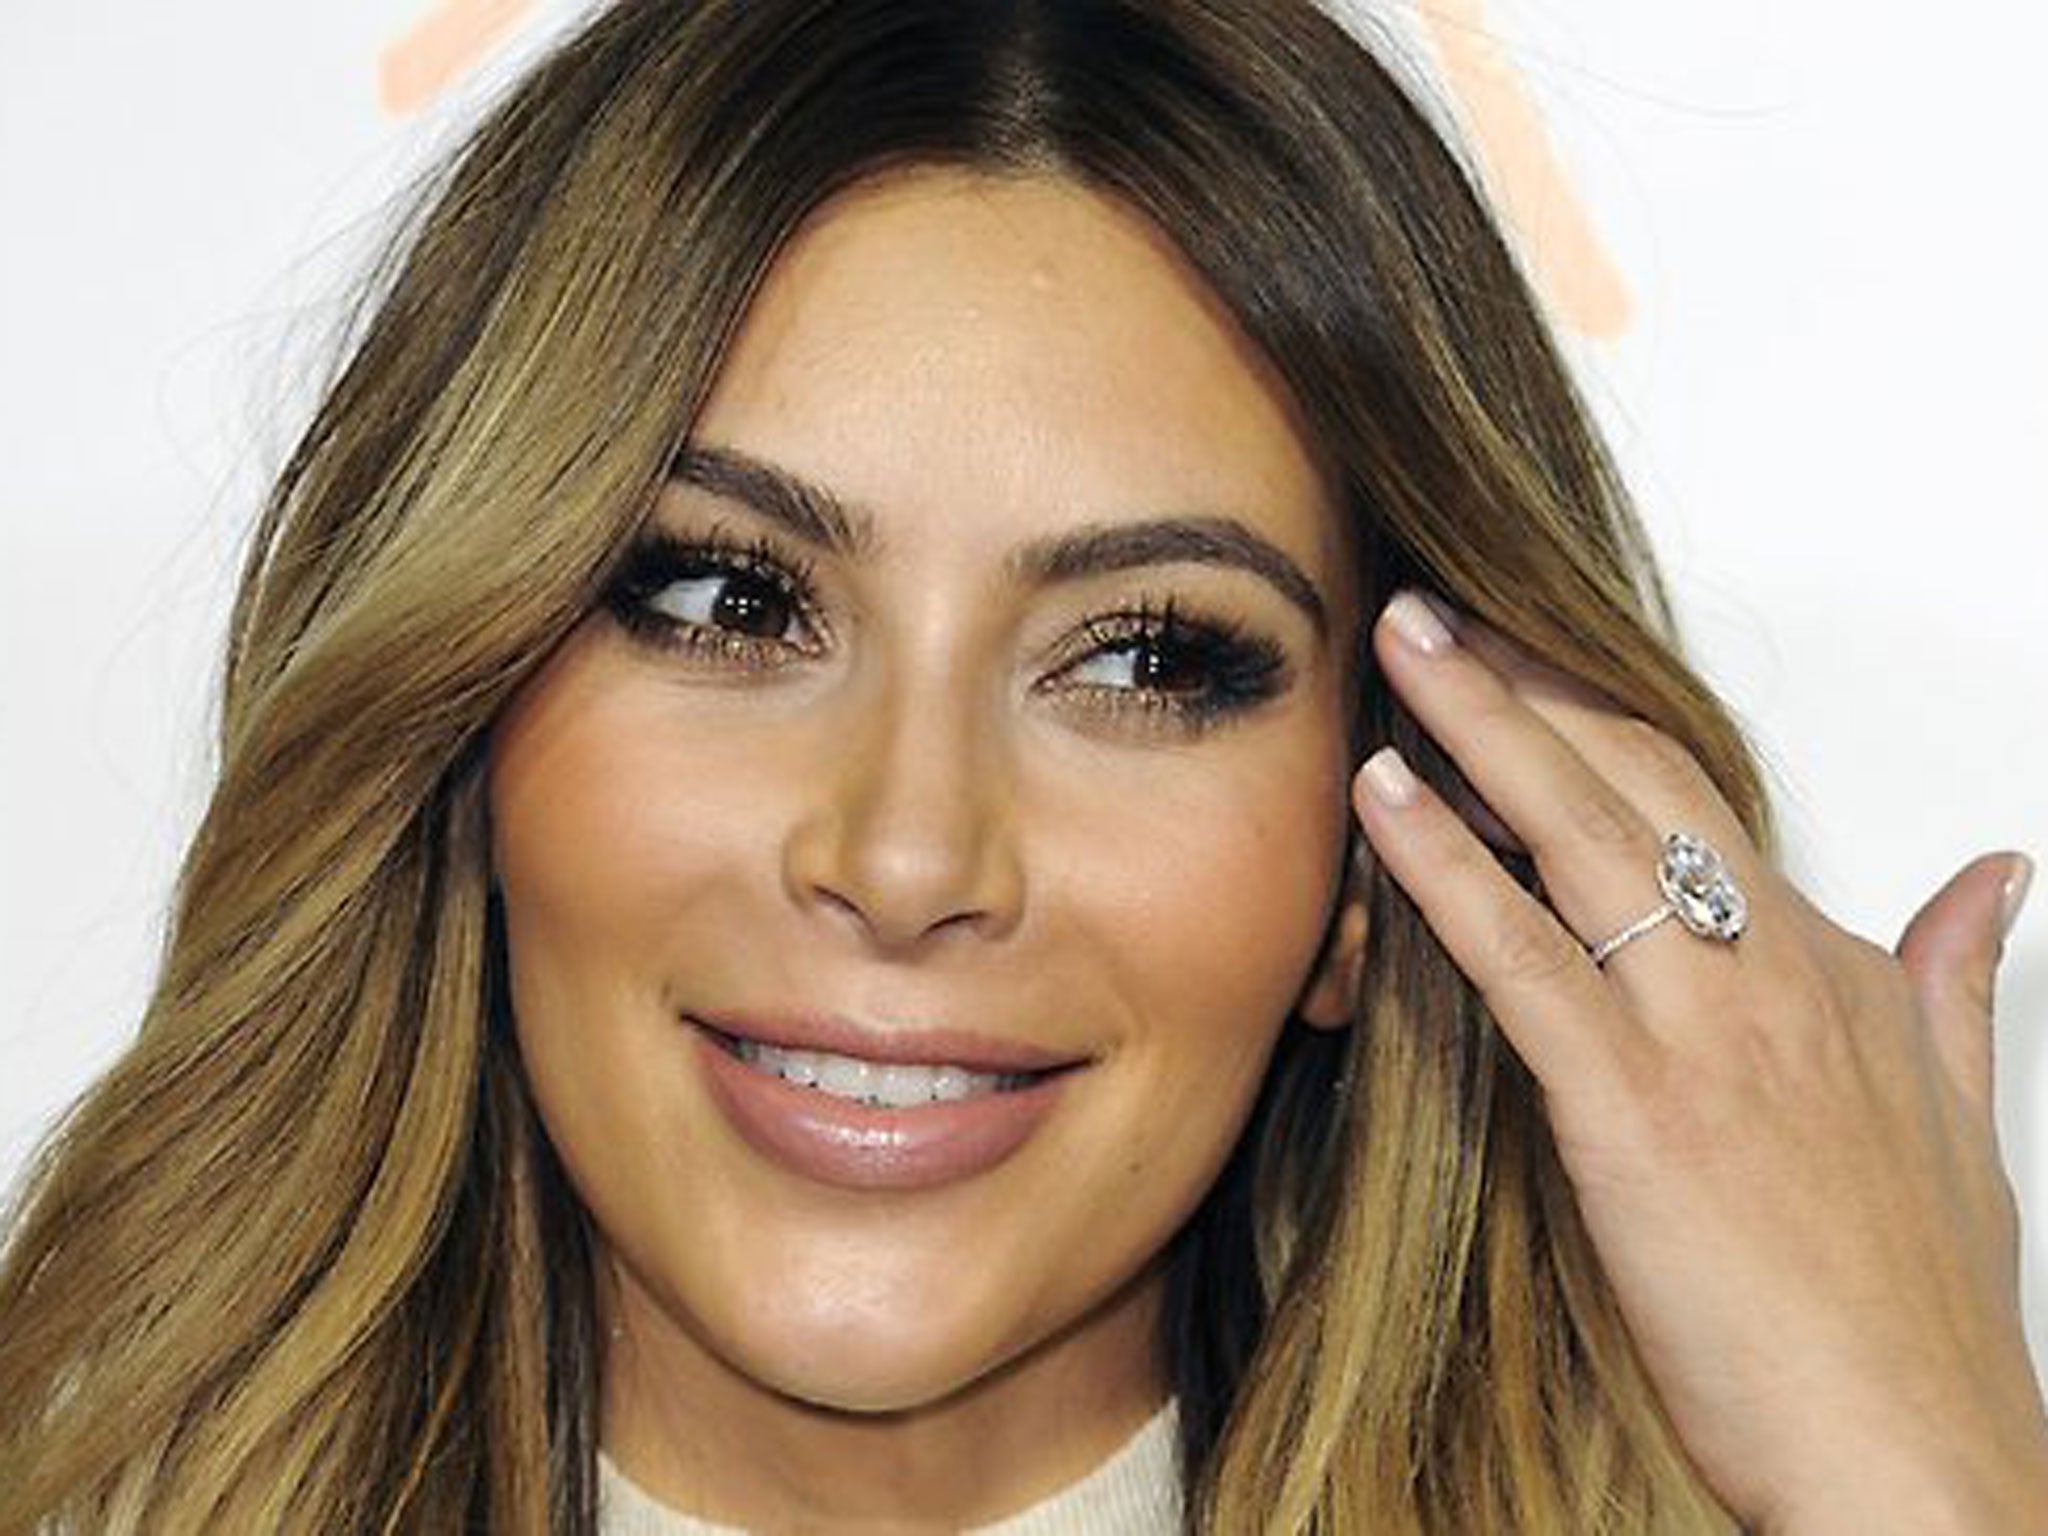 Kim Kardashian wears her 15-carat diamond engagement ring